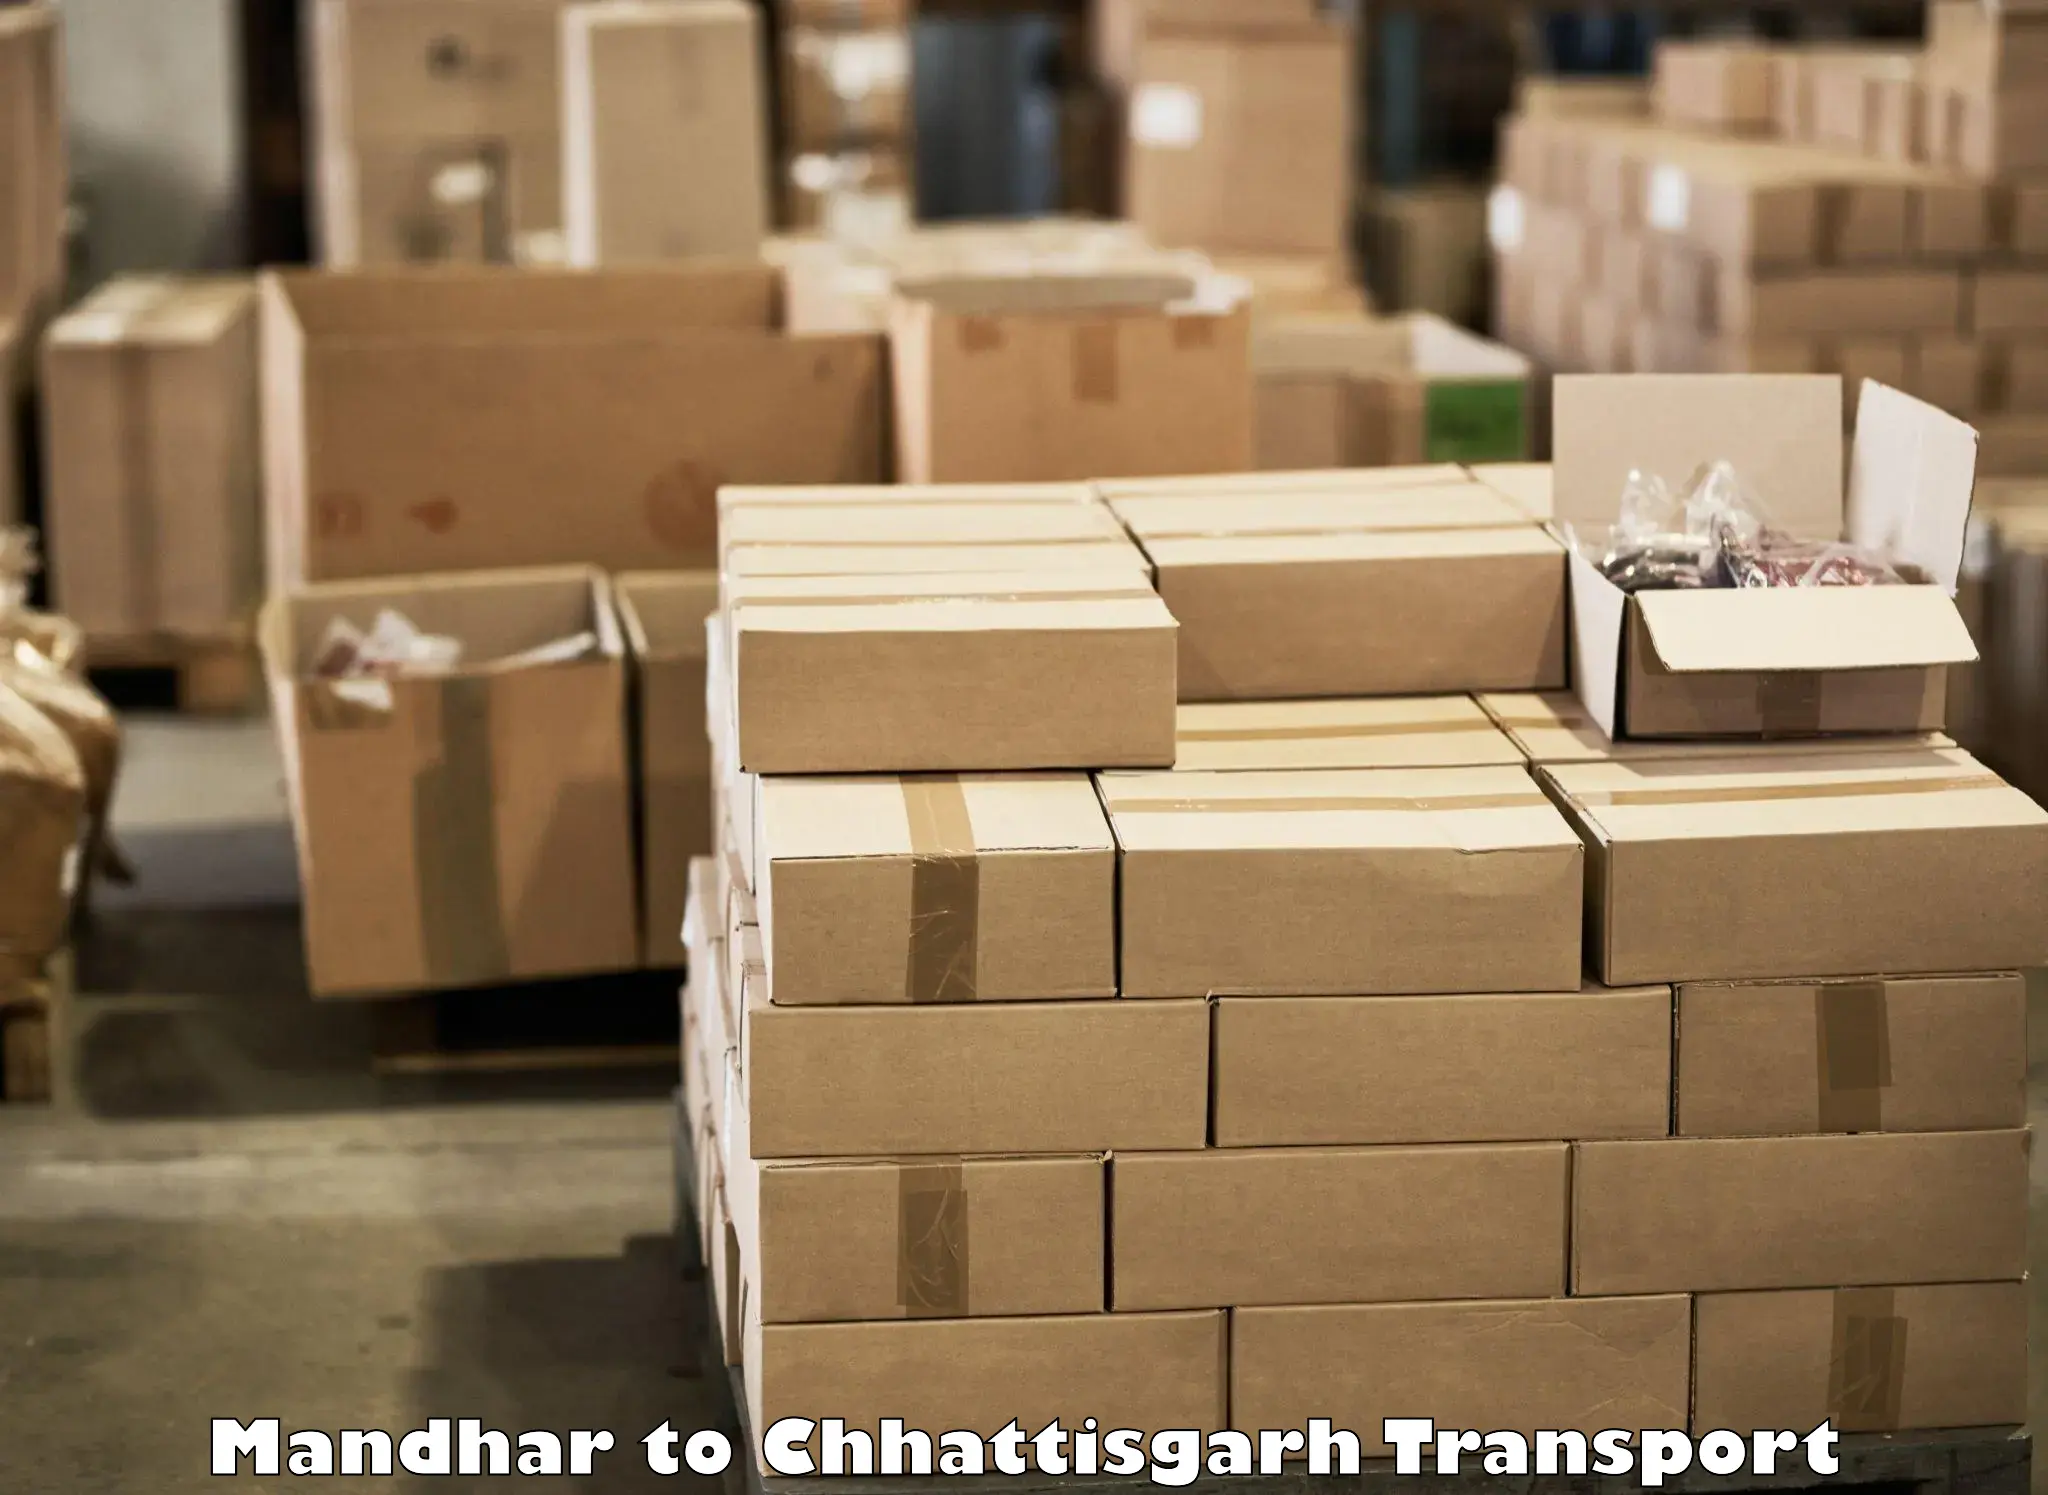 Lorry transport service Mandhar to bagbahra